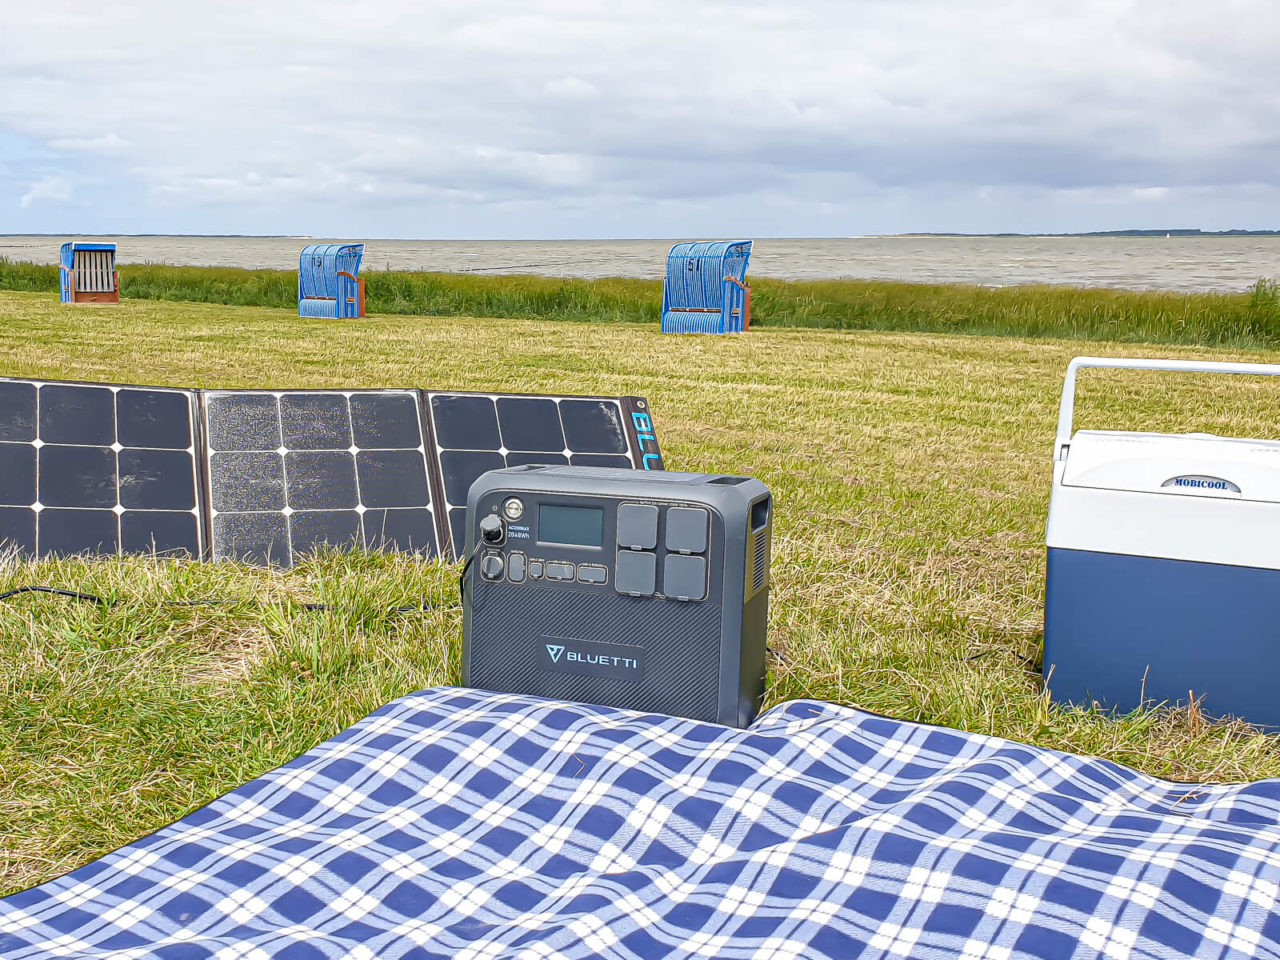 Solargenerator Bluetti Ac200max, Solar Panel Bluetti Sp200, Nordsee, Deich, Wiese, Picknick, Decke, Kühlbox